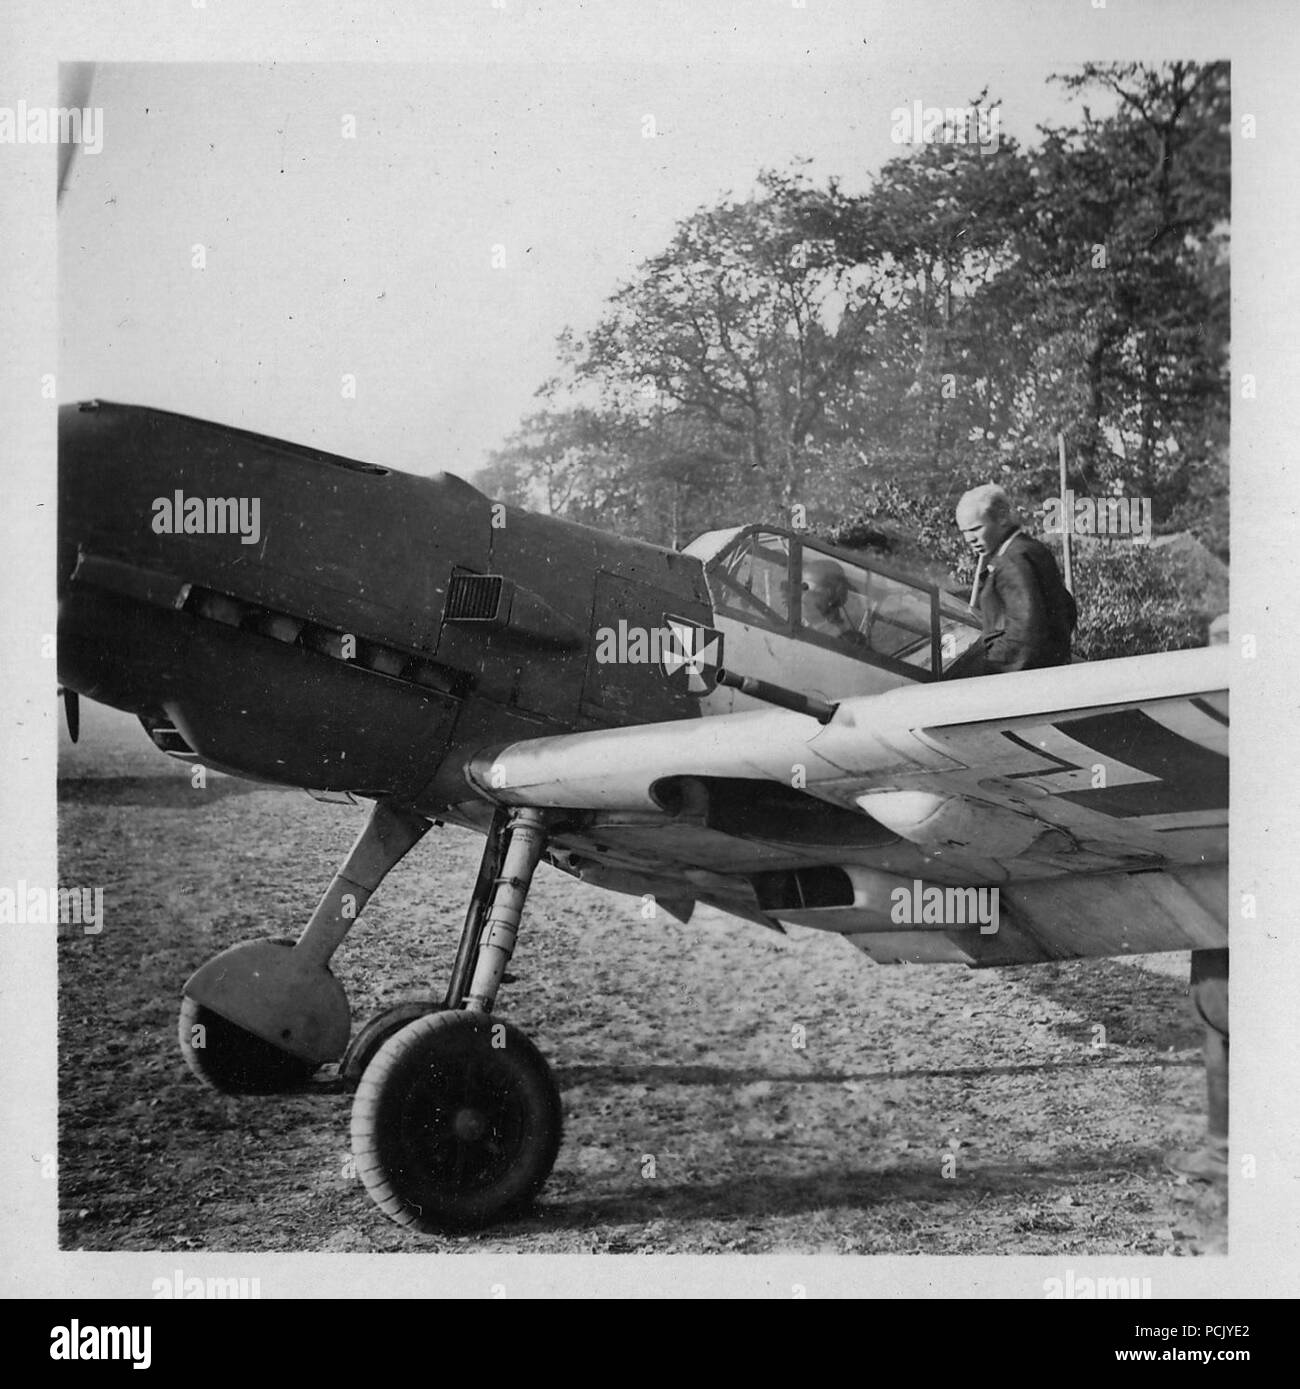 Image à partir d'un album de photos relatives à II. Gruppe, Jagdgeschwader 3 : Hauptmann Erich Woitke, Staffelkapitän du 6./JG3 et agissant de Gruppenkommandeur II./JG3 à partir du 1er octobre 1940 jusqu'au 23 novembre 1940, se prépare à décoller dans son Messerschmitt Bf 109E de Wierre au bois à l'été 1940. Banque D'Images